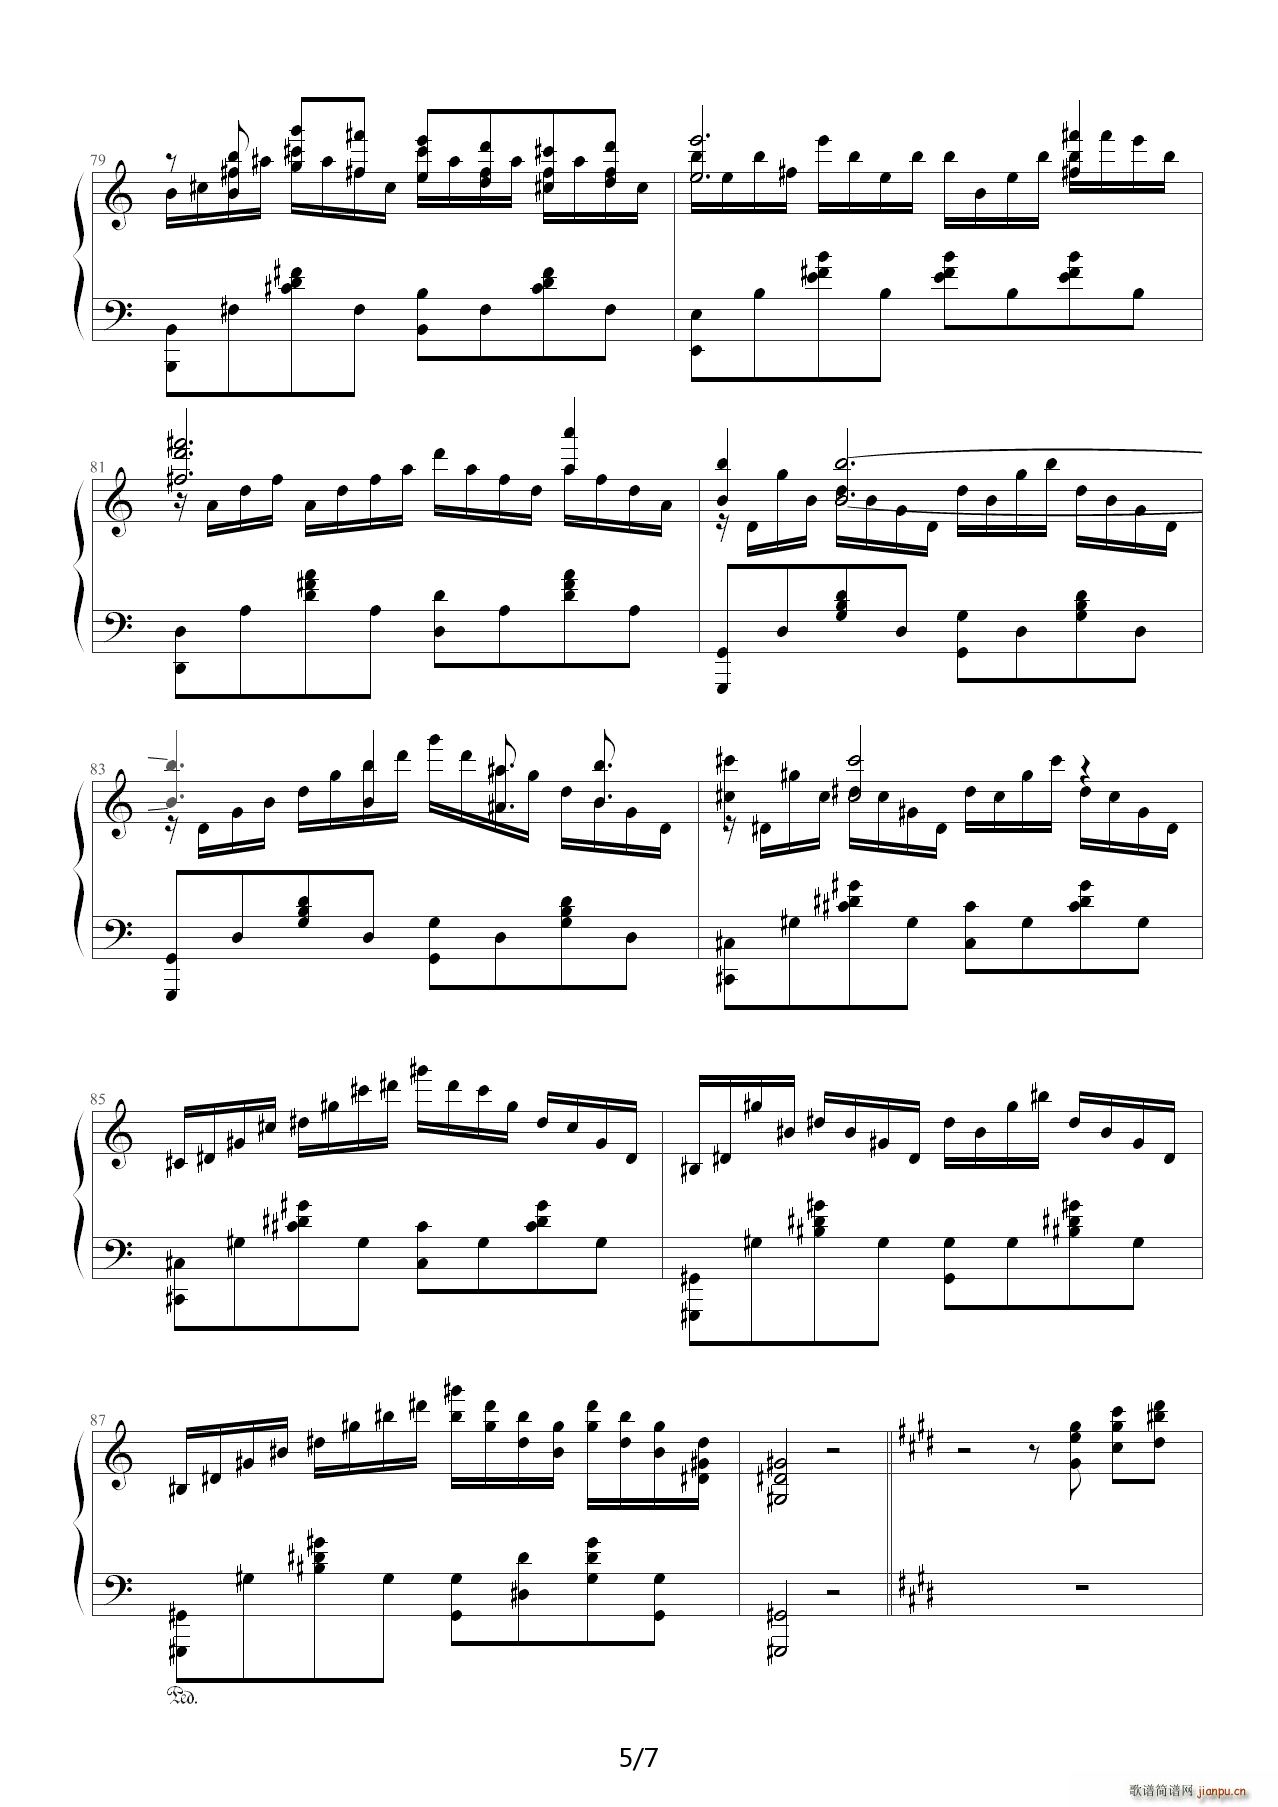 劲乐团V3-贝多芬悲怆第三乐章改编双手简谱预览-EOP在线乐谱架